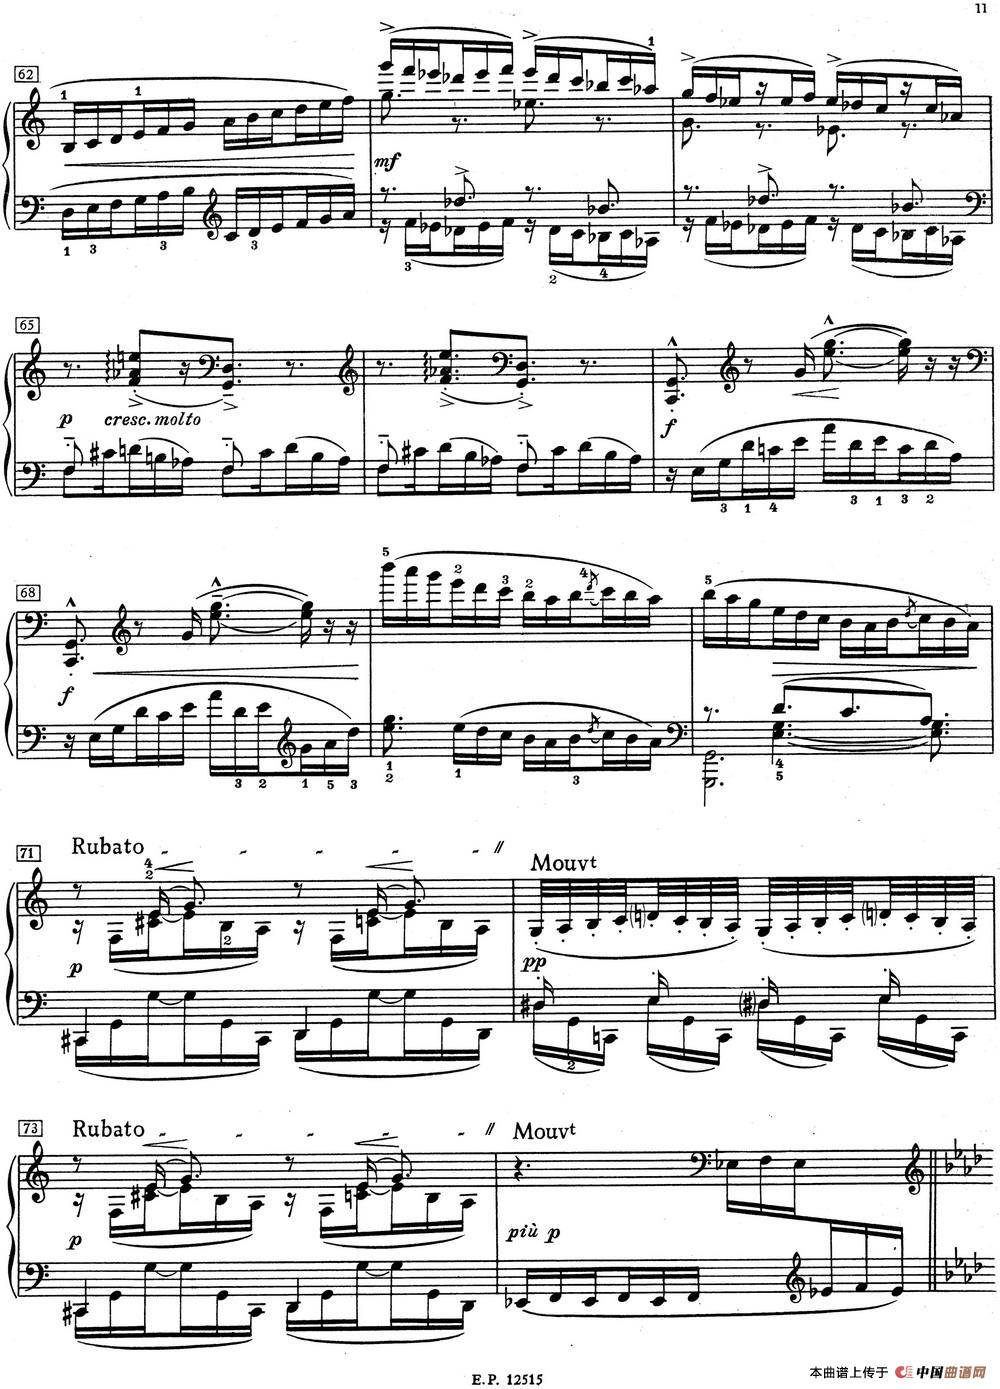 德彪西12首钢琴练习曲（1 五指练习v1.0 cinq doigt